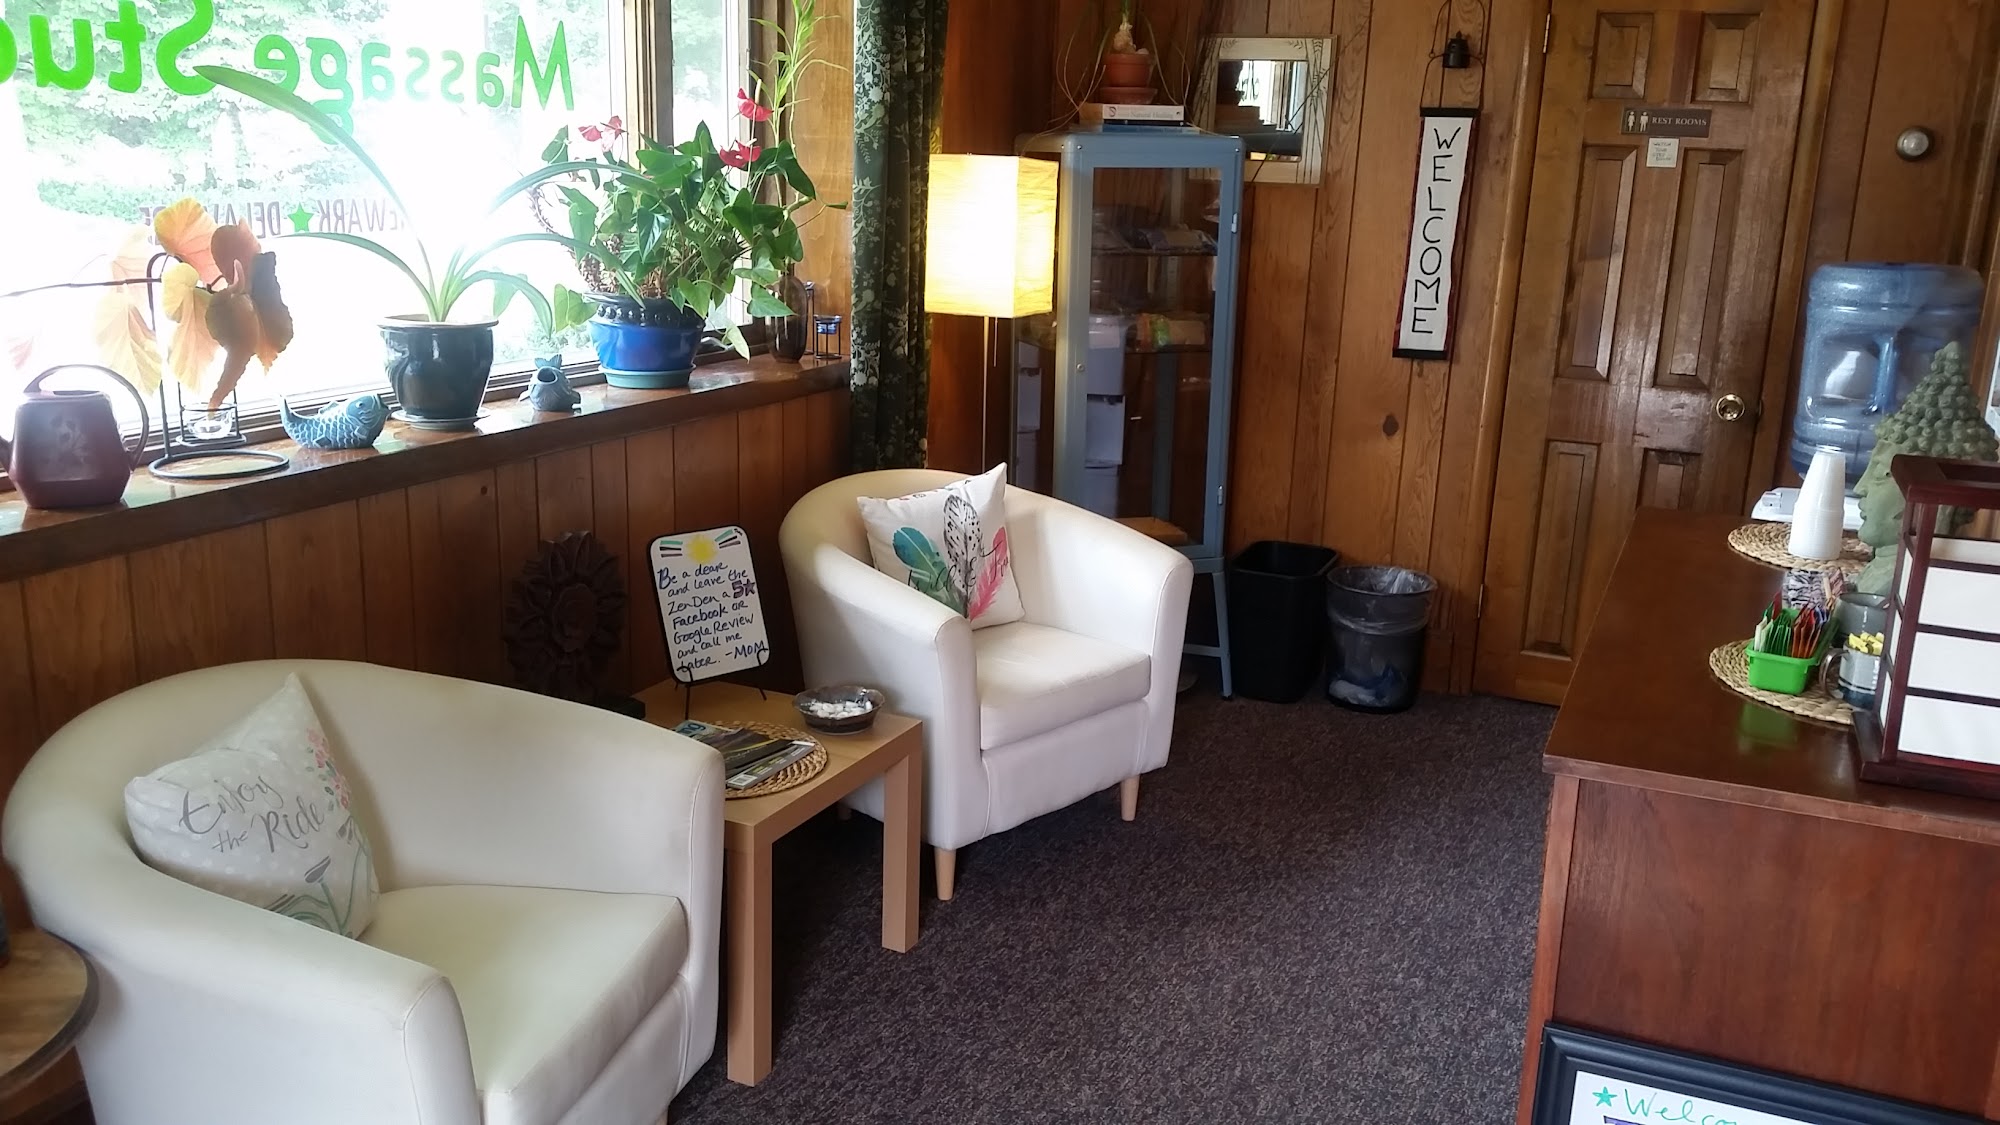 The Zen Den Massage Studio